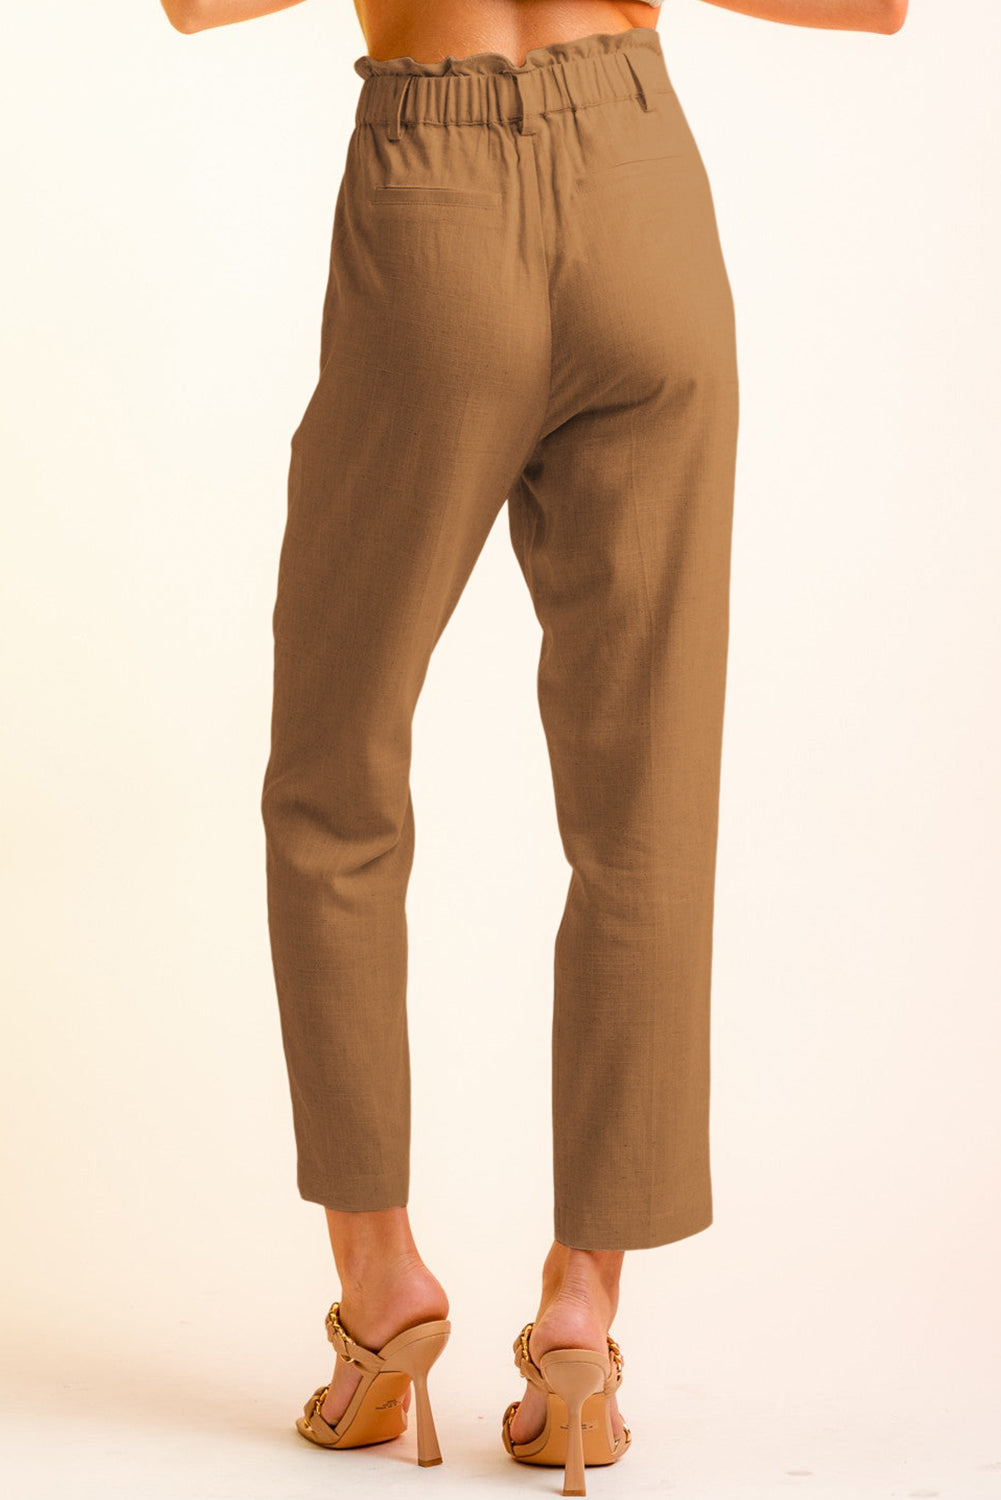 Brown Button Flap Pocket High Waisted Linen Pants